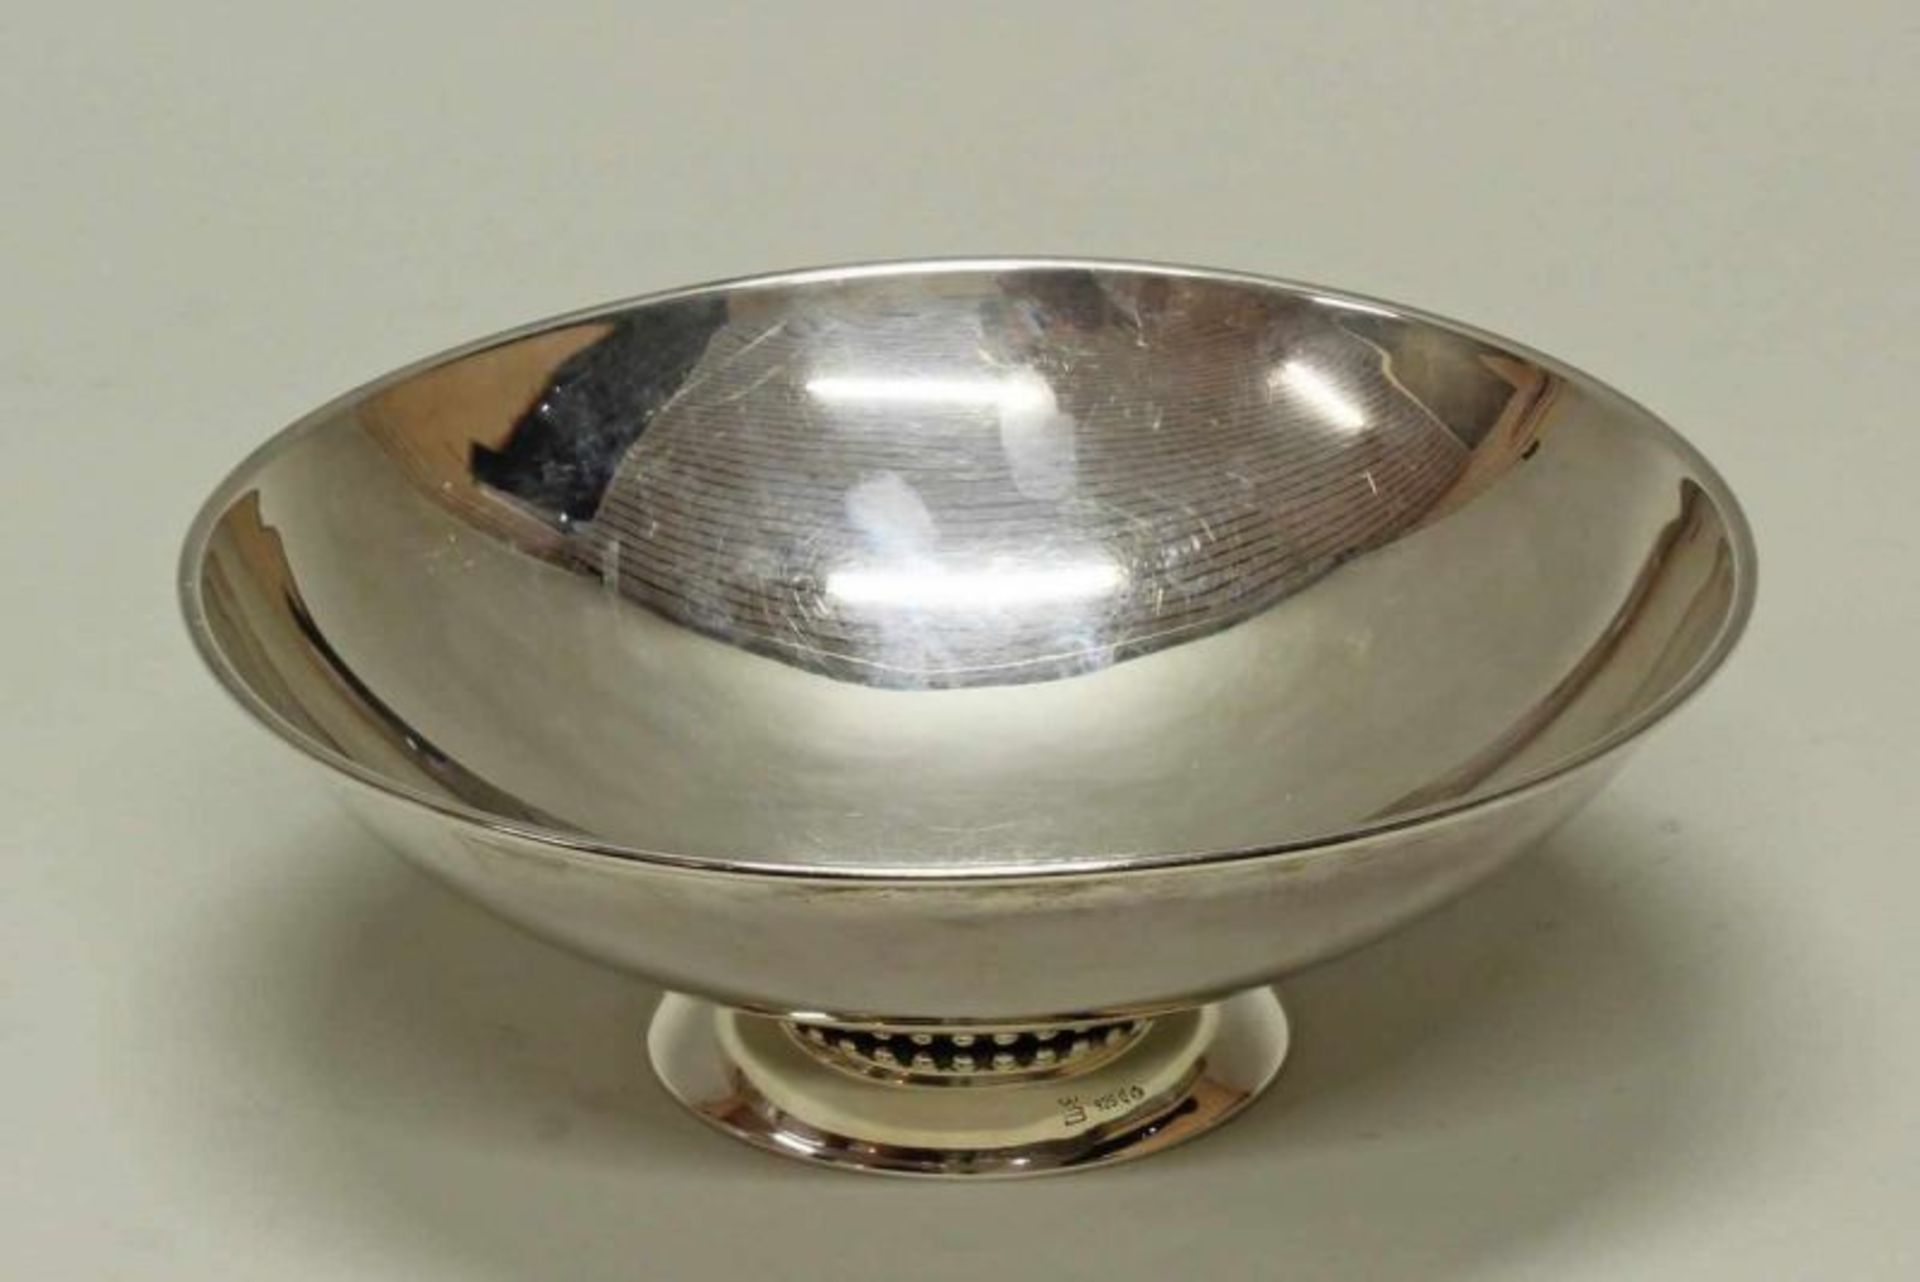 Fußschale, Silber 925, deutsch, glatt, Nodus mit Perlschnur, 6.5 cm hoch, ø 18.8 cm, ca. 282 g 20.00